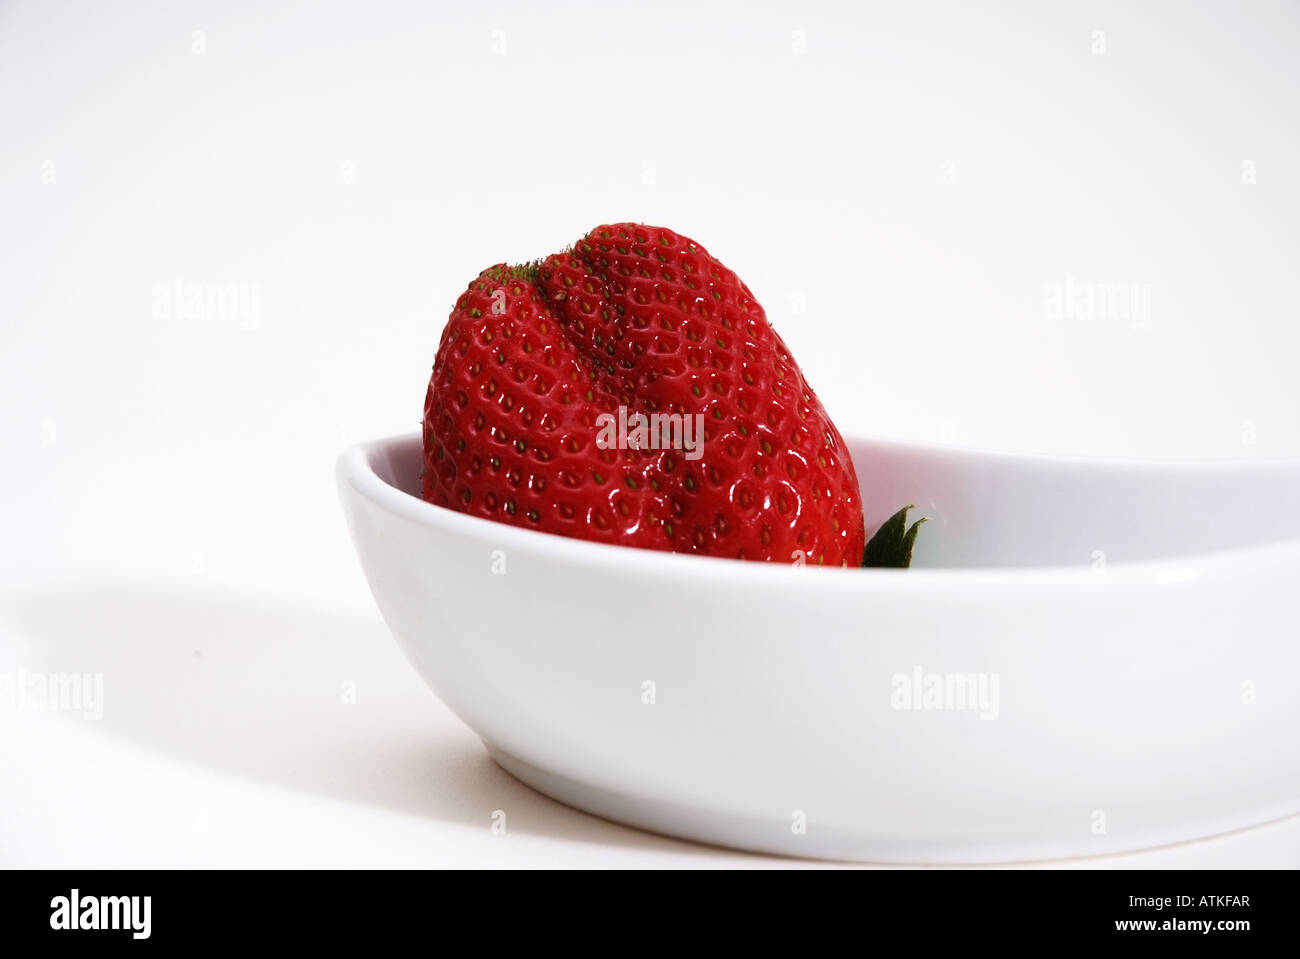 A Strawberry Eine Erdbeere Stock Photo